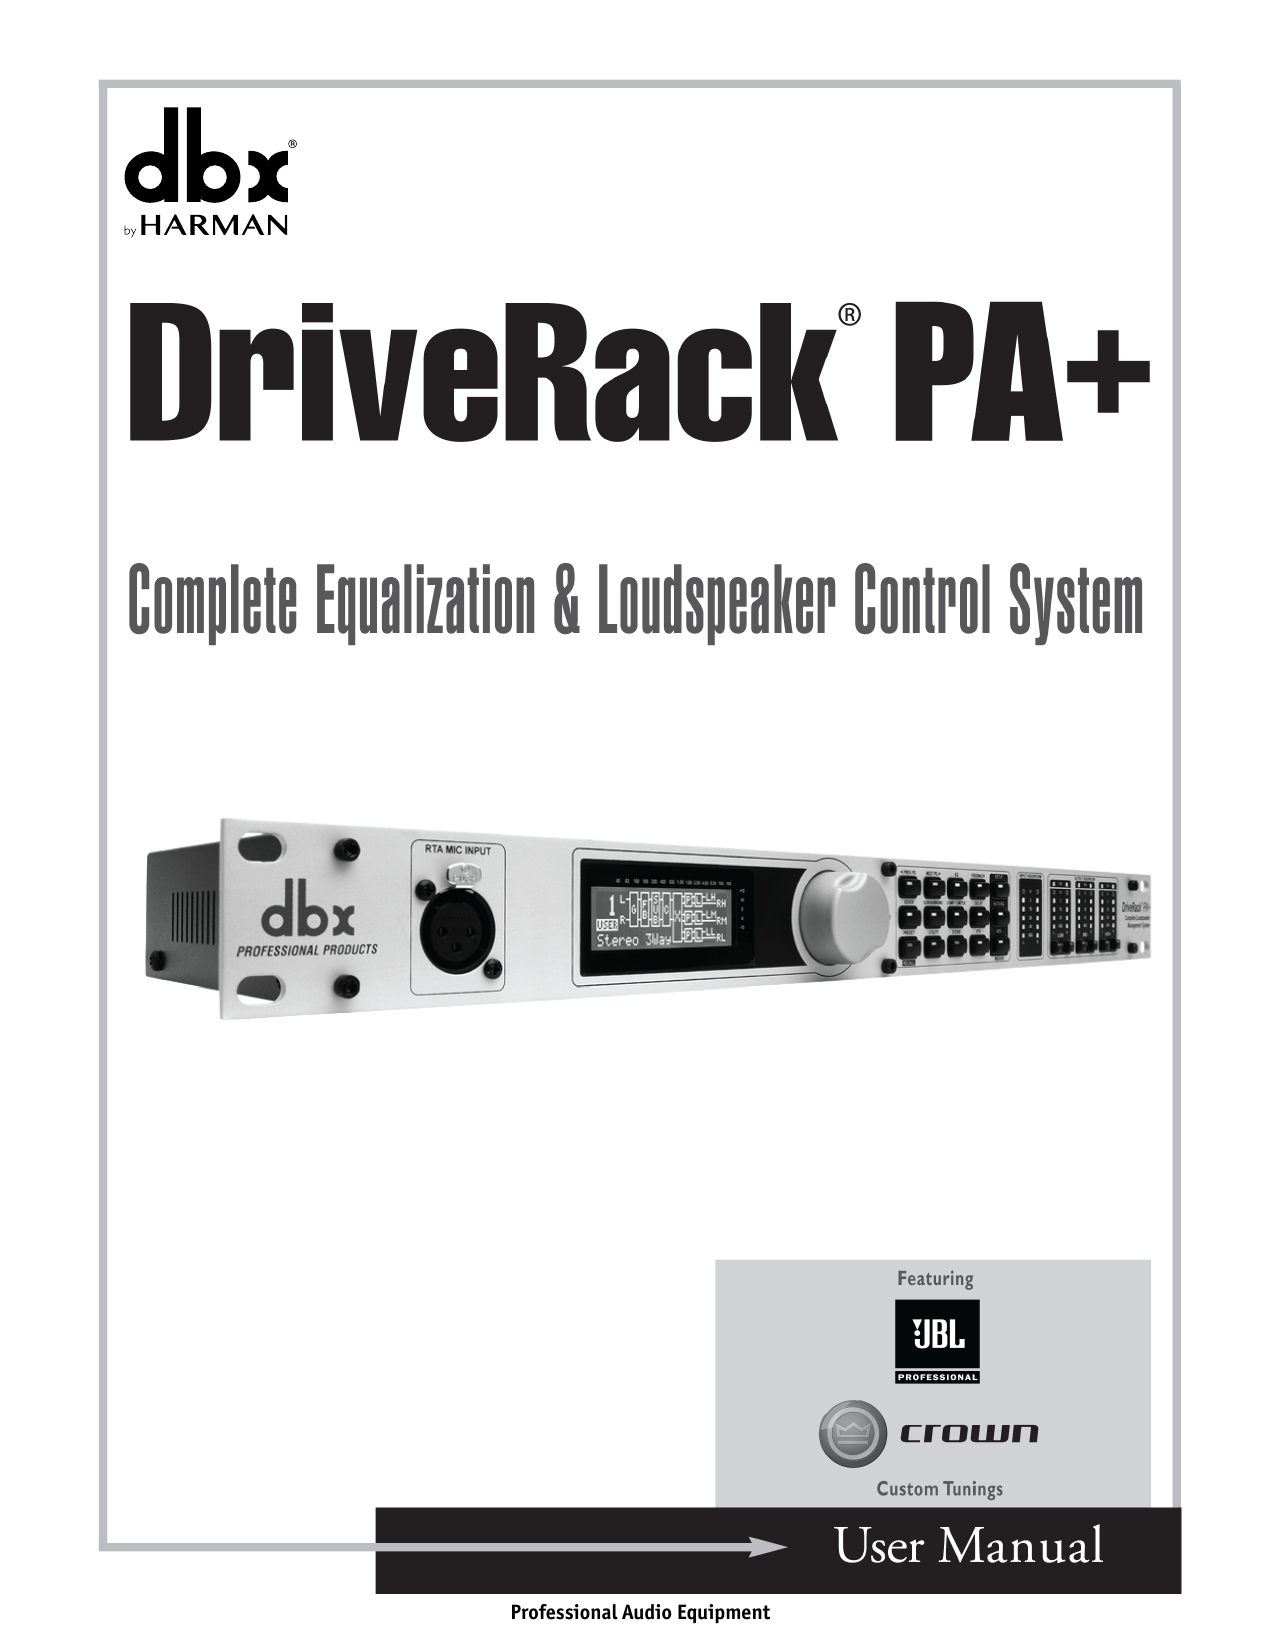 dbx driverack 260 manual instalar